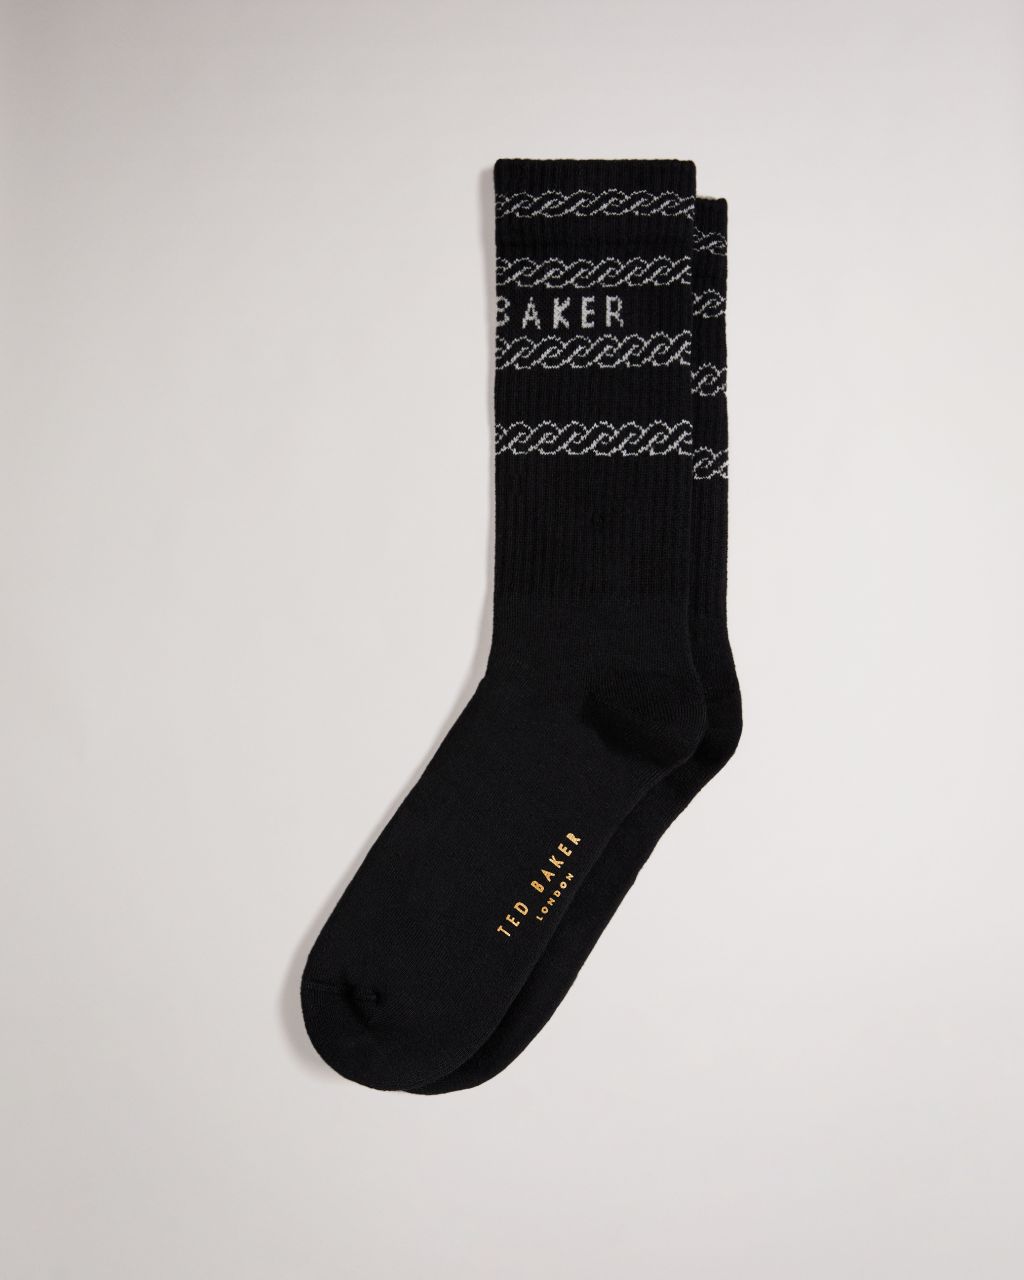 Ted Baker Men's Branded Chain Socks in Black, Chains